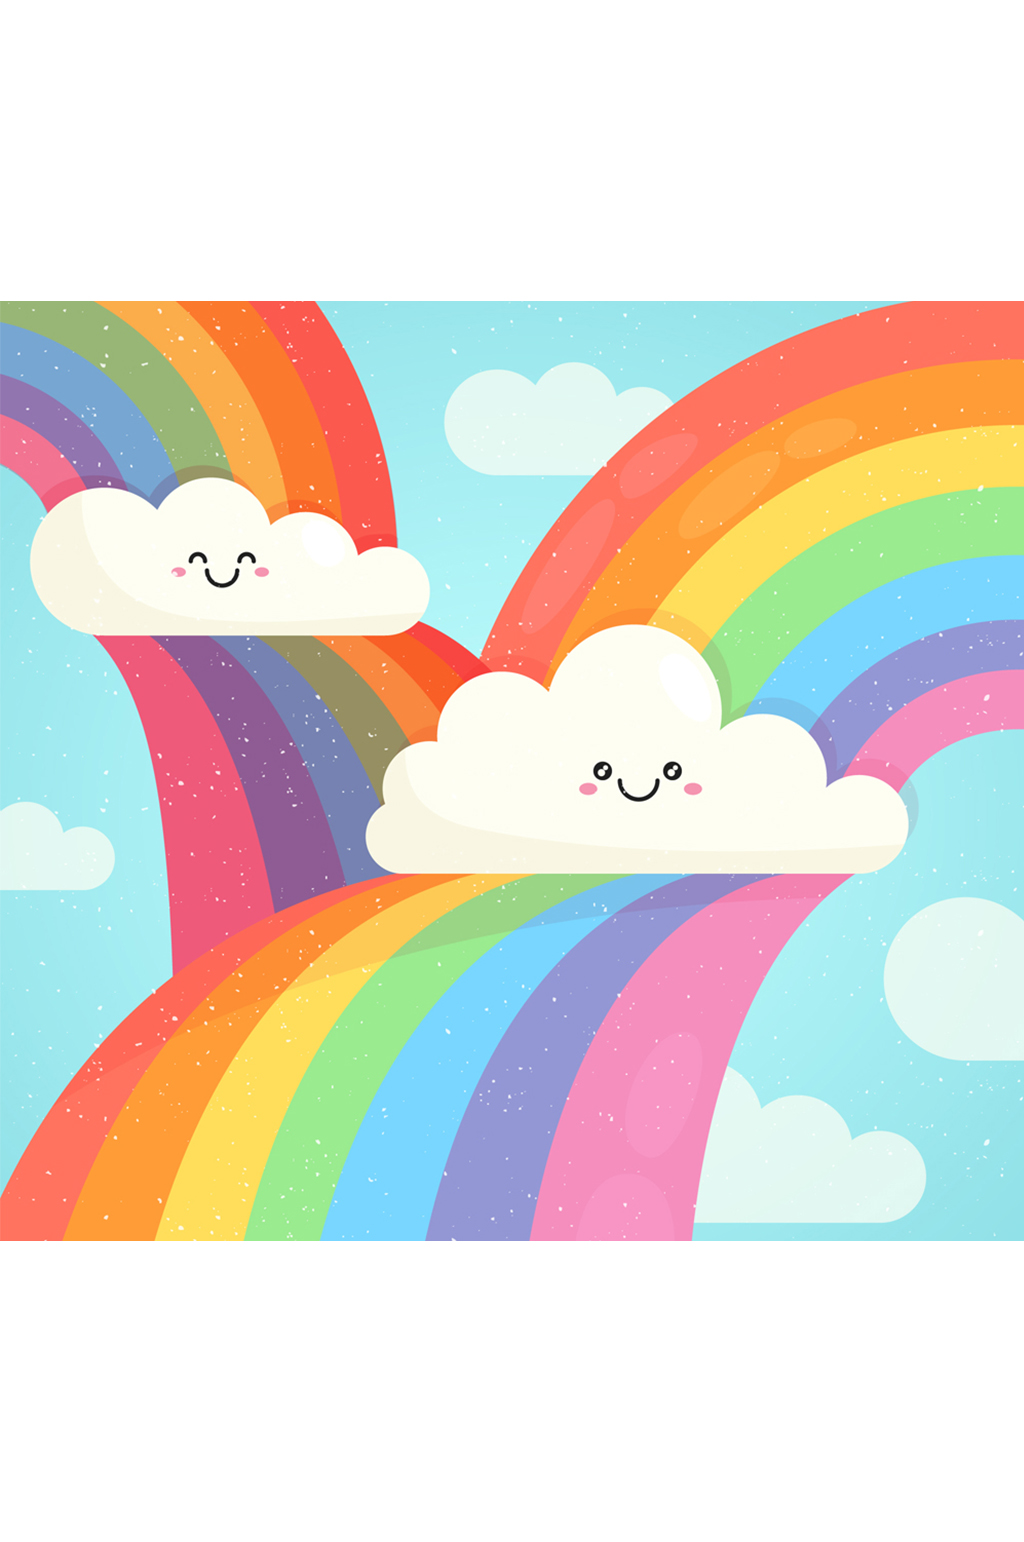 可爱彩虹和笑脸云朵矢量素材模板下载